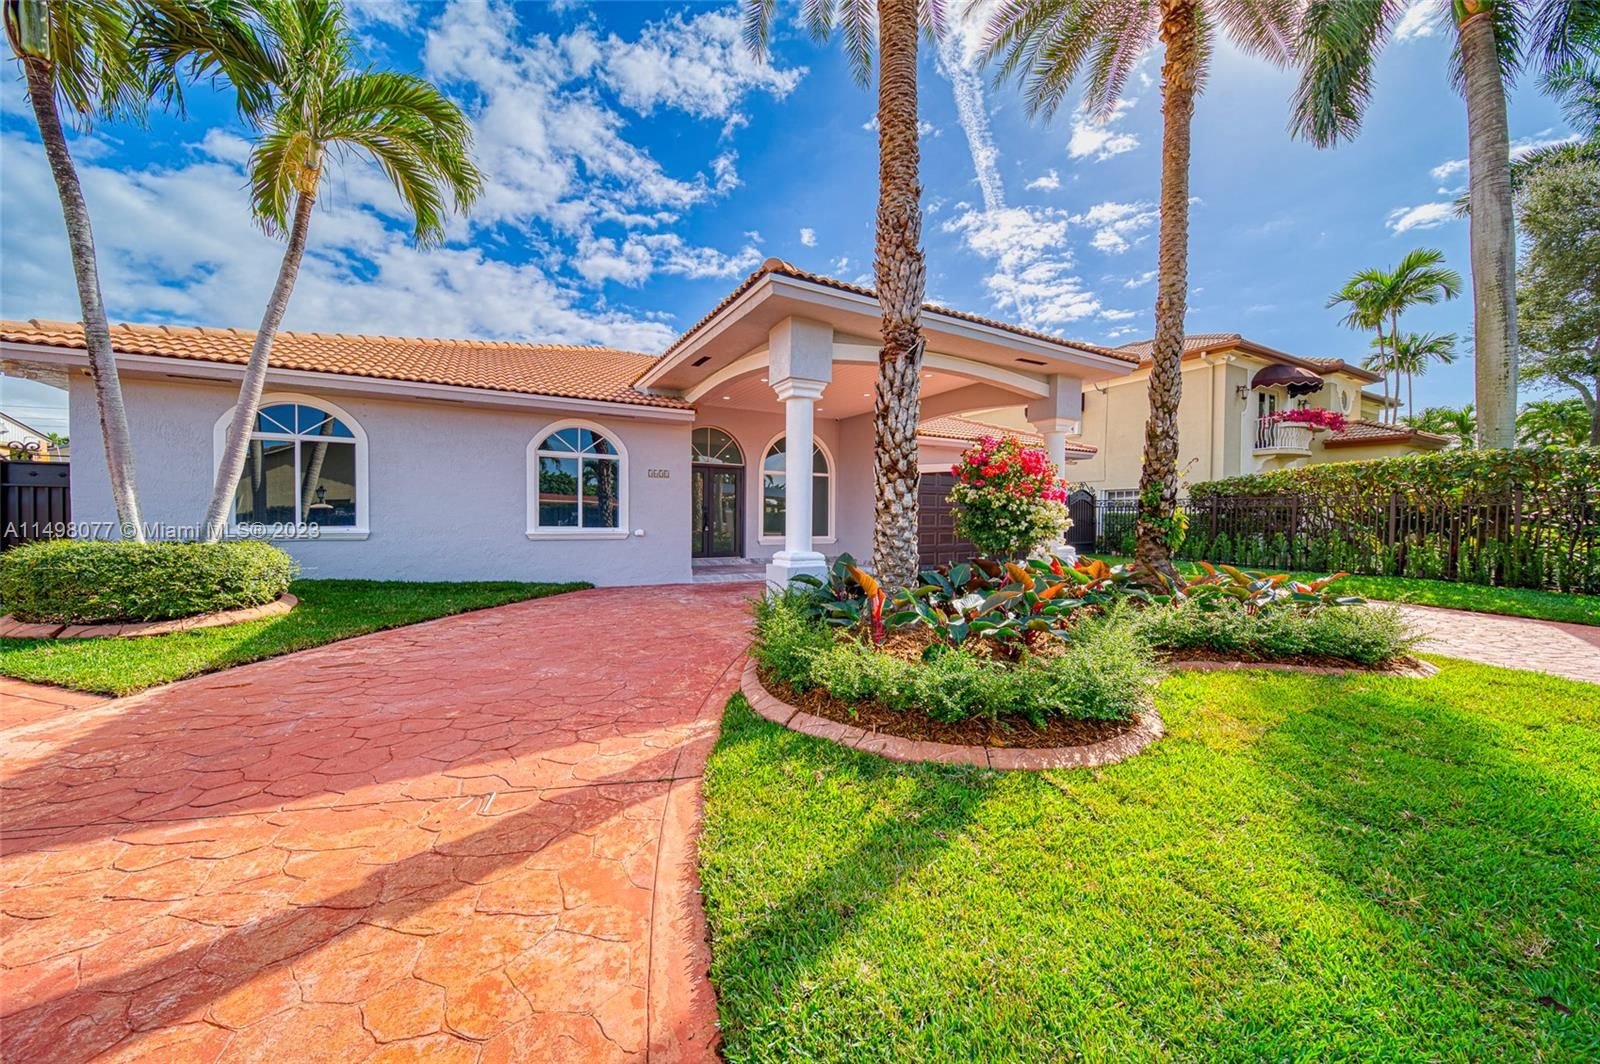 Real estate property located at 3631 139th CT, Miami-Dade County, FEDY ESTATES, Miami, FL